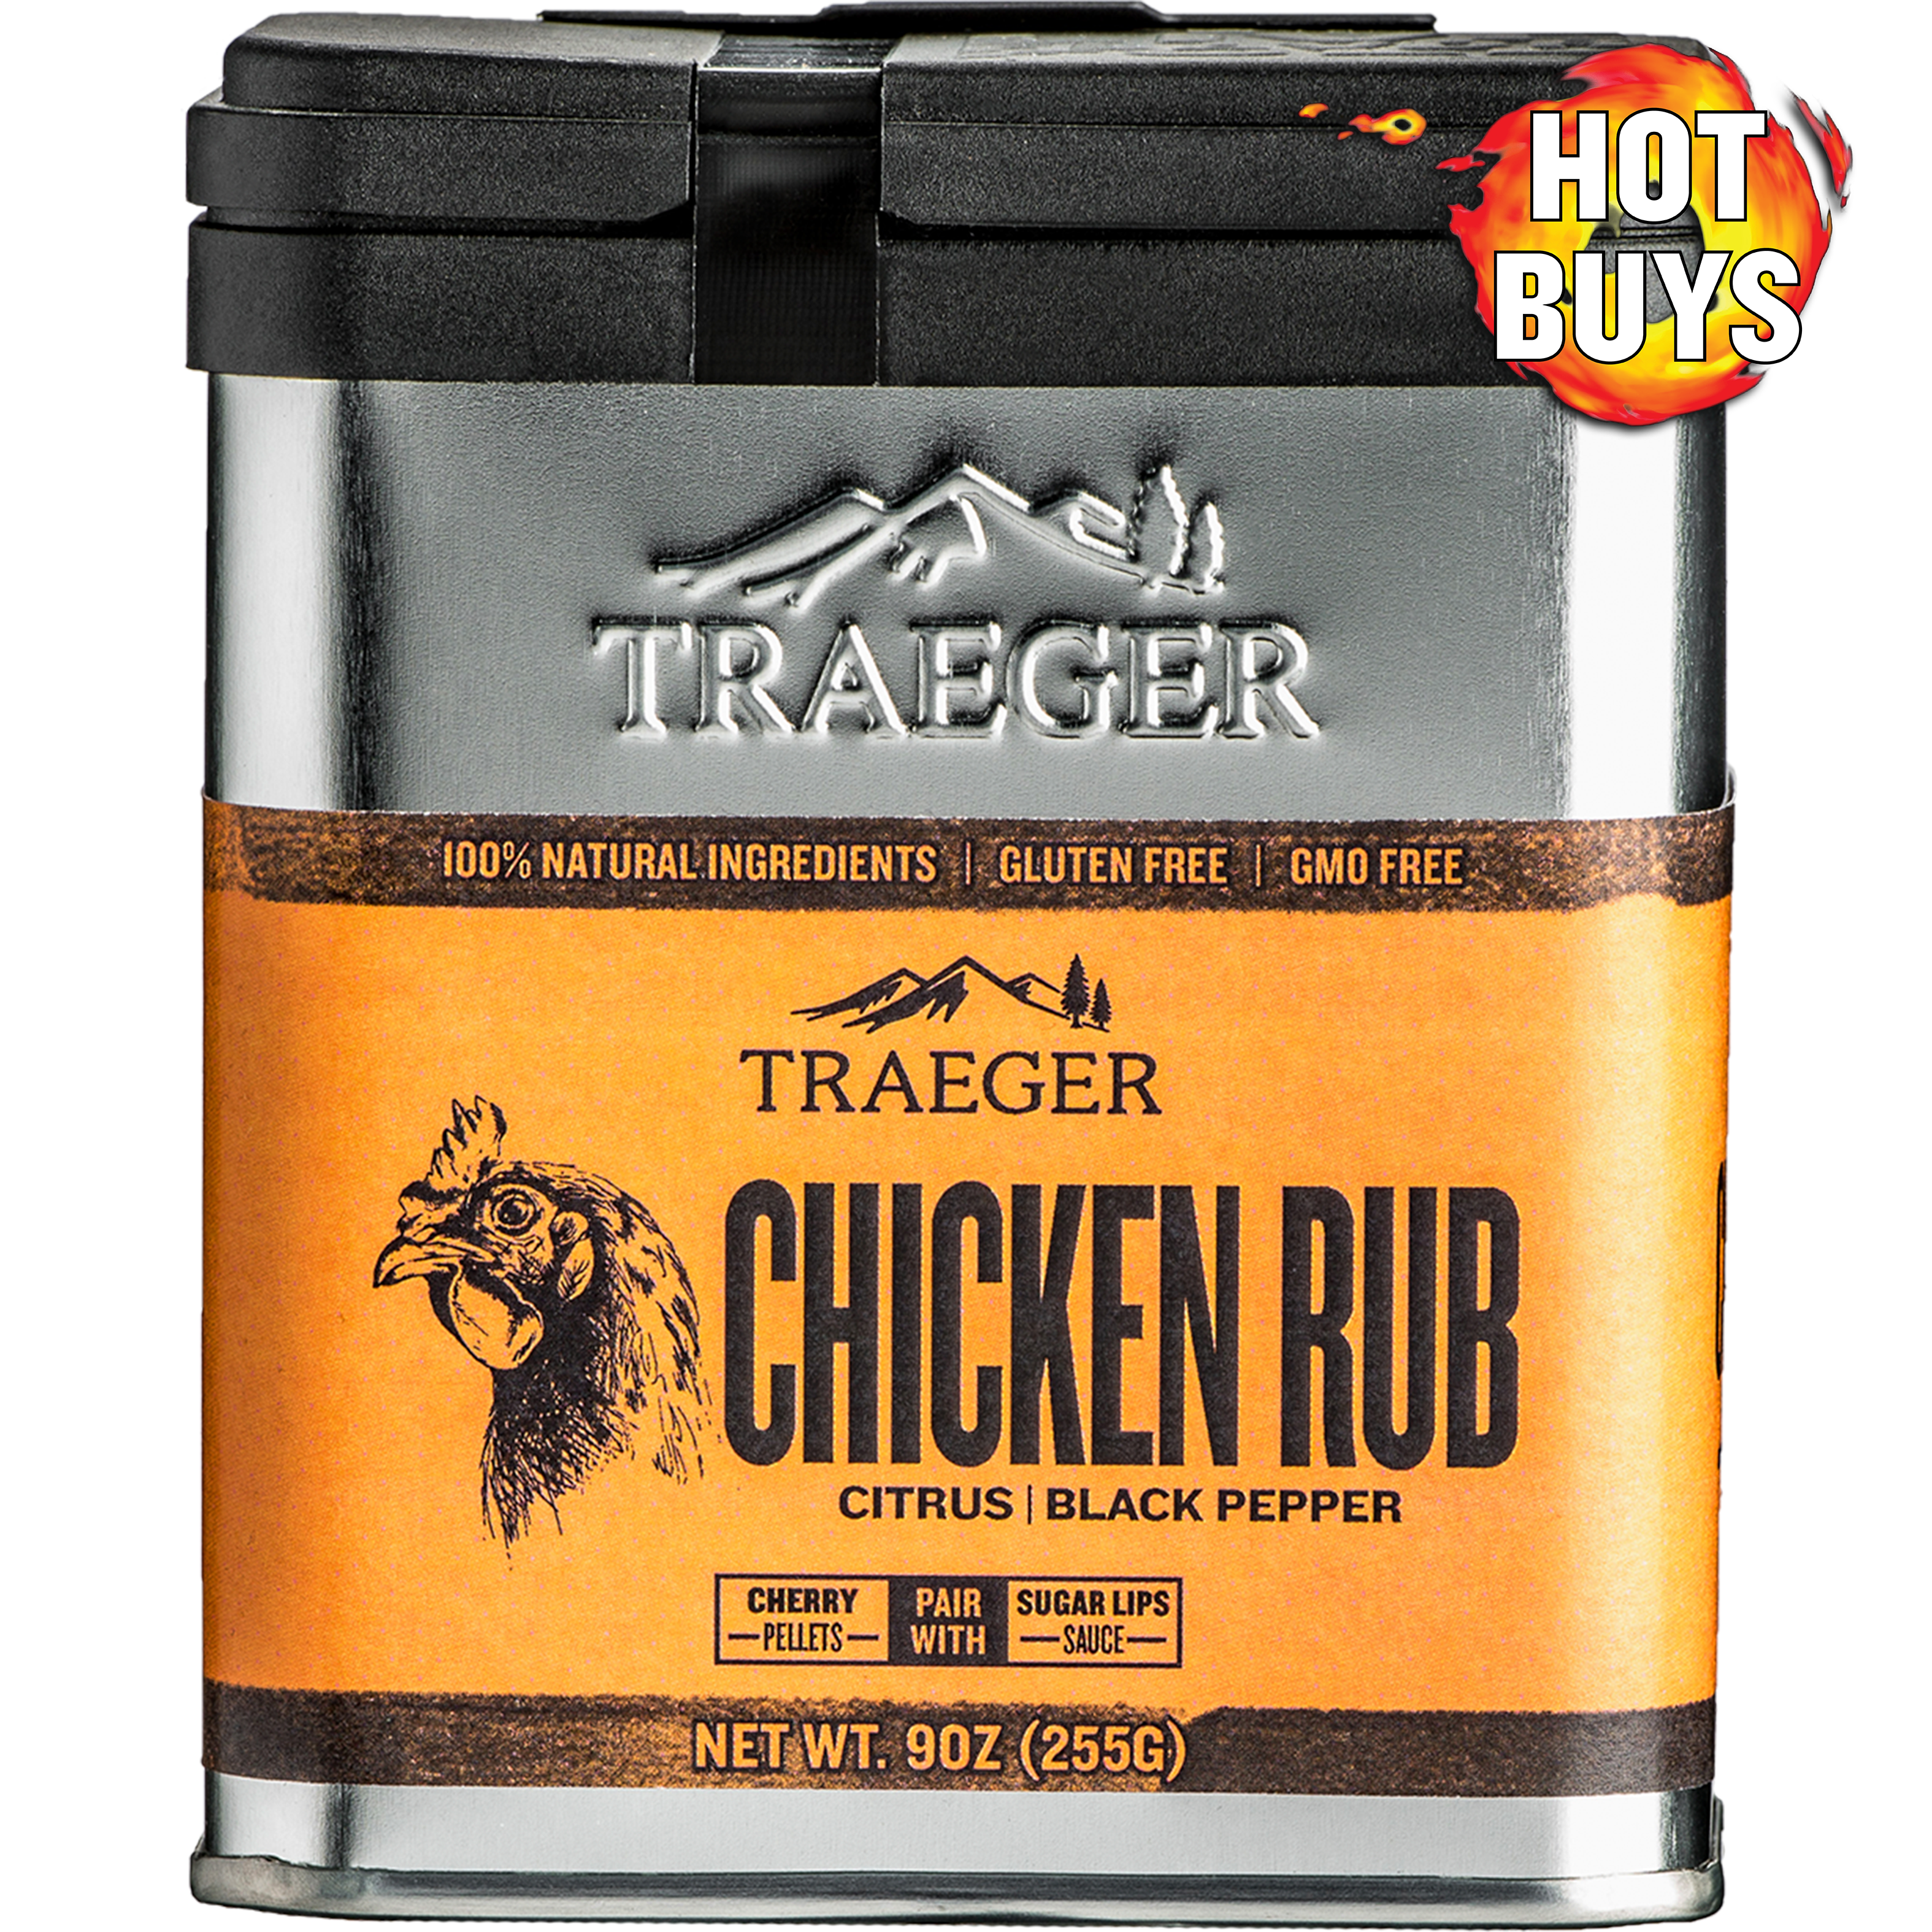 Traeger BBQ Rub & Spices Sampler Kit